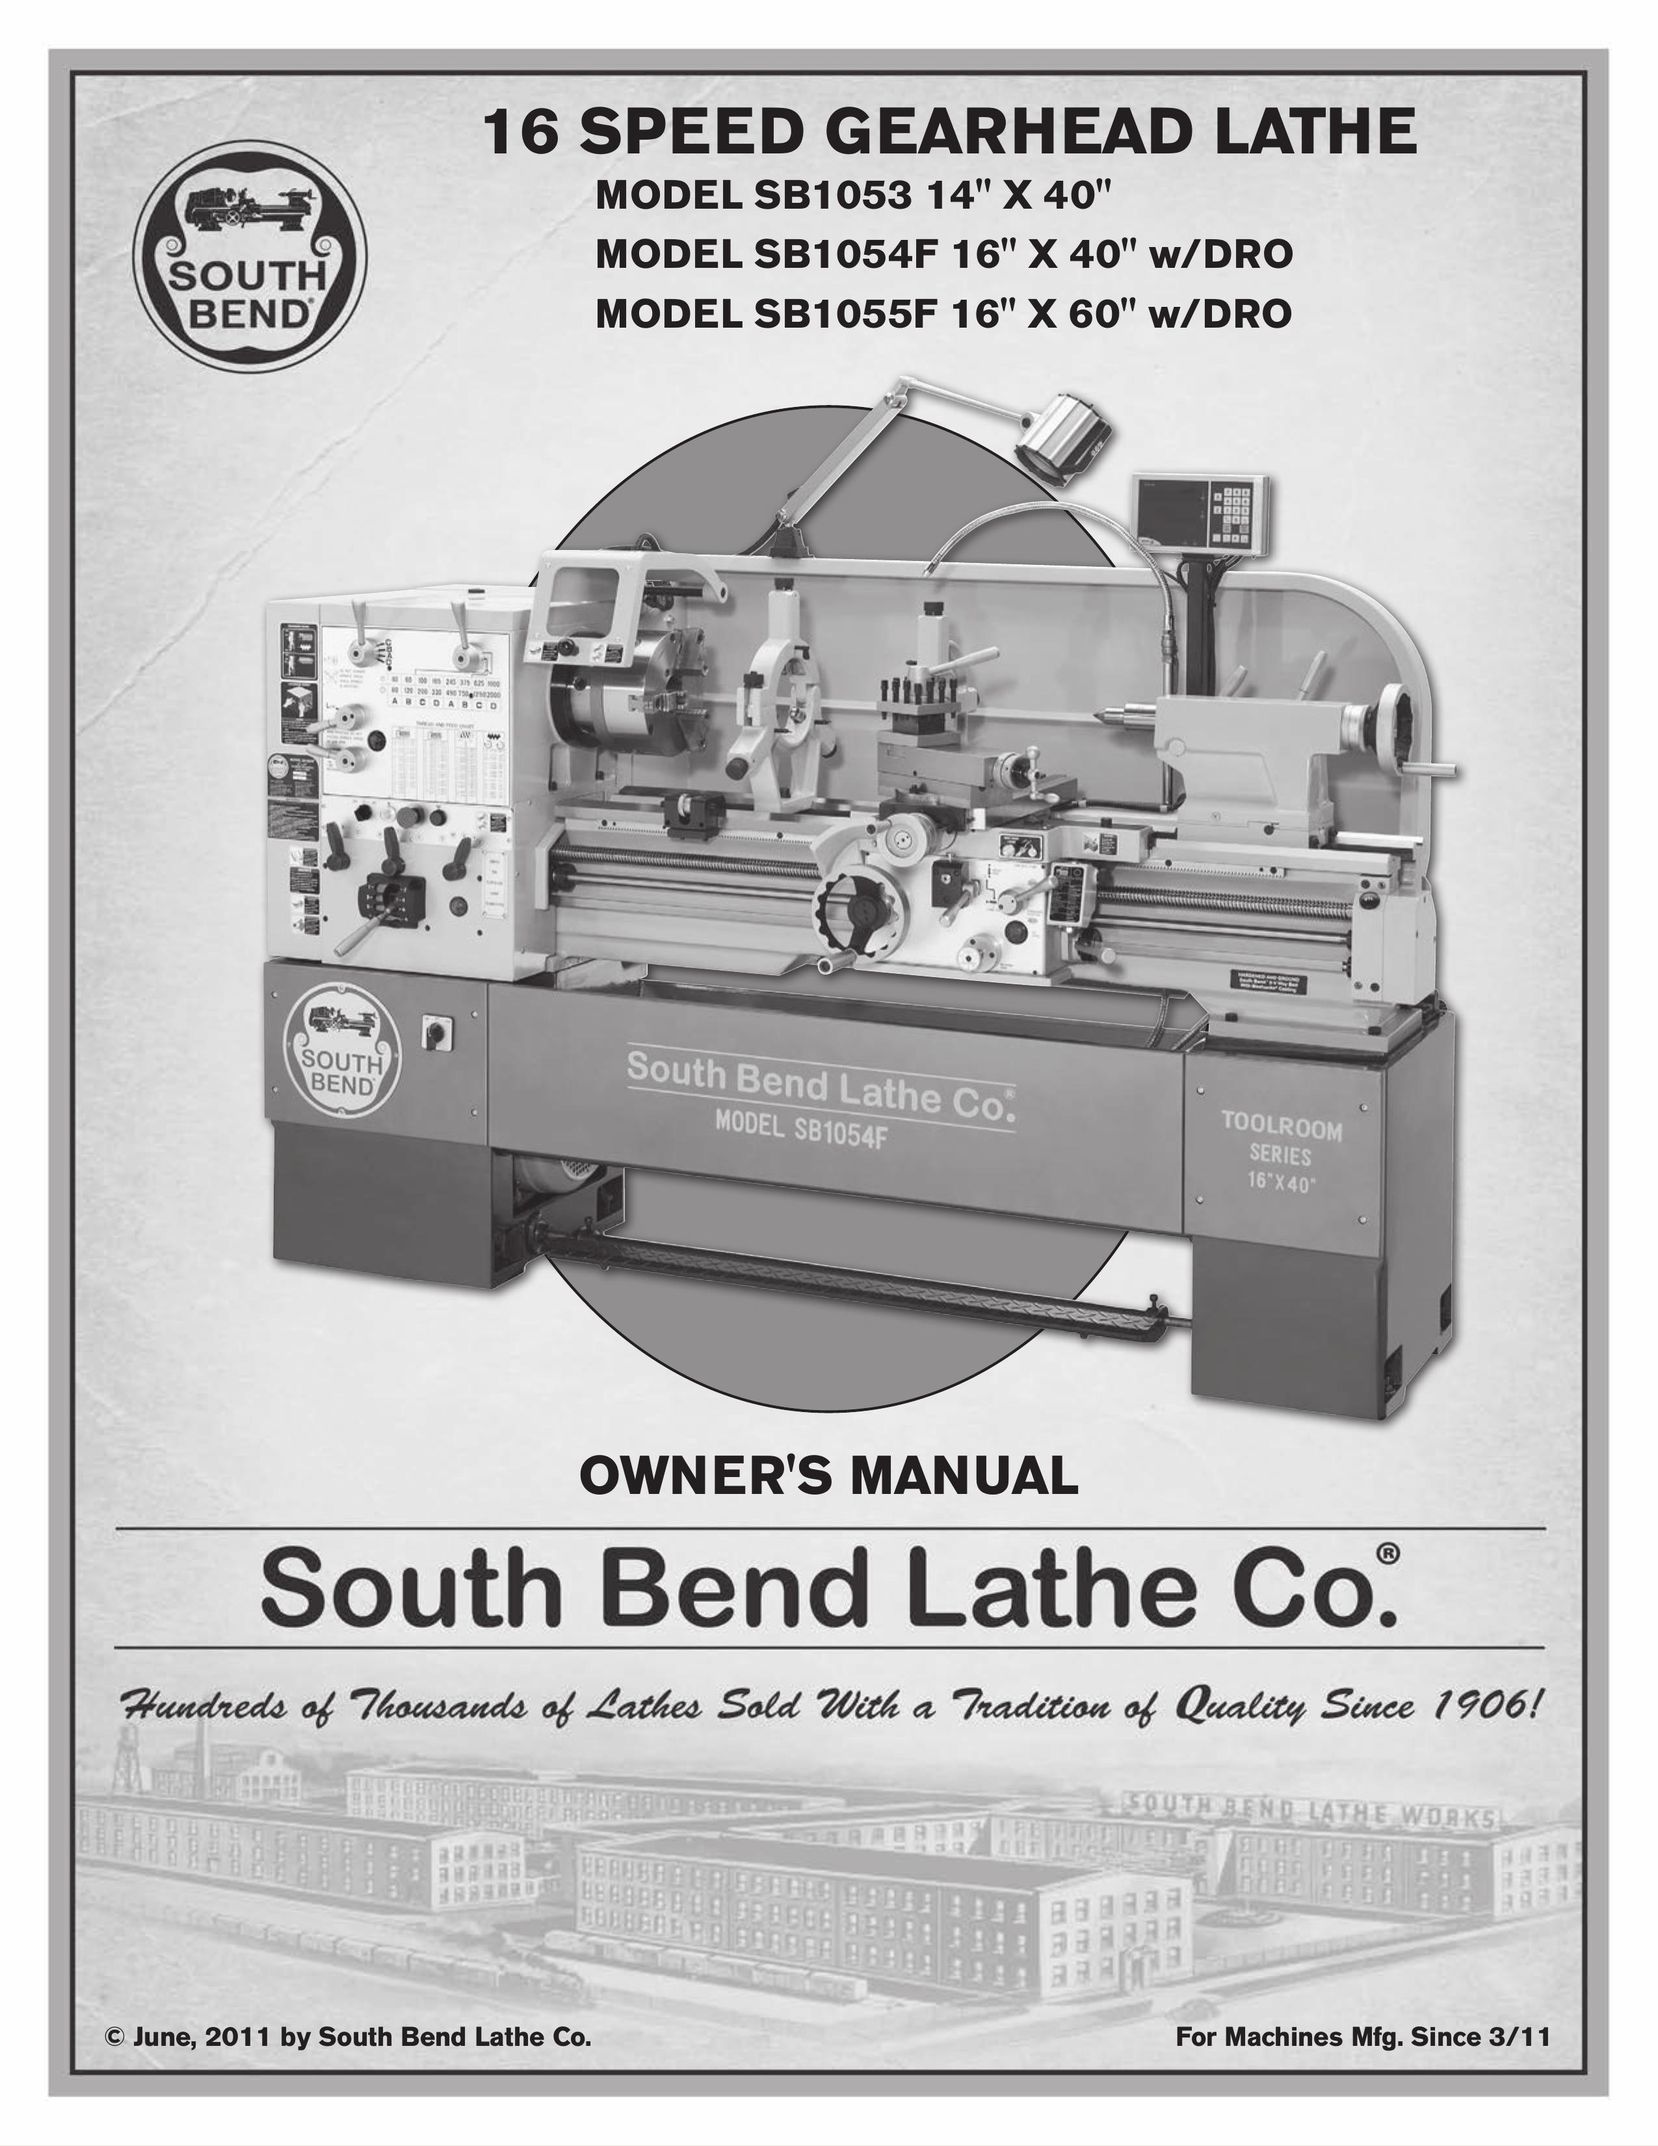 Southbend SB1055F 16" X 60" w/DRO Lathe User Manual